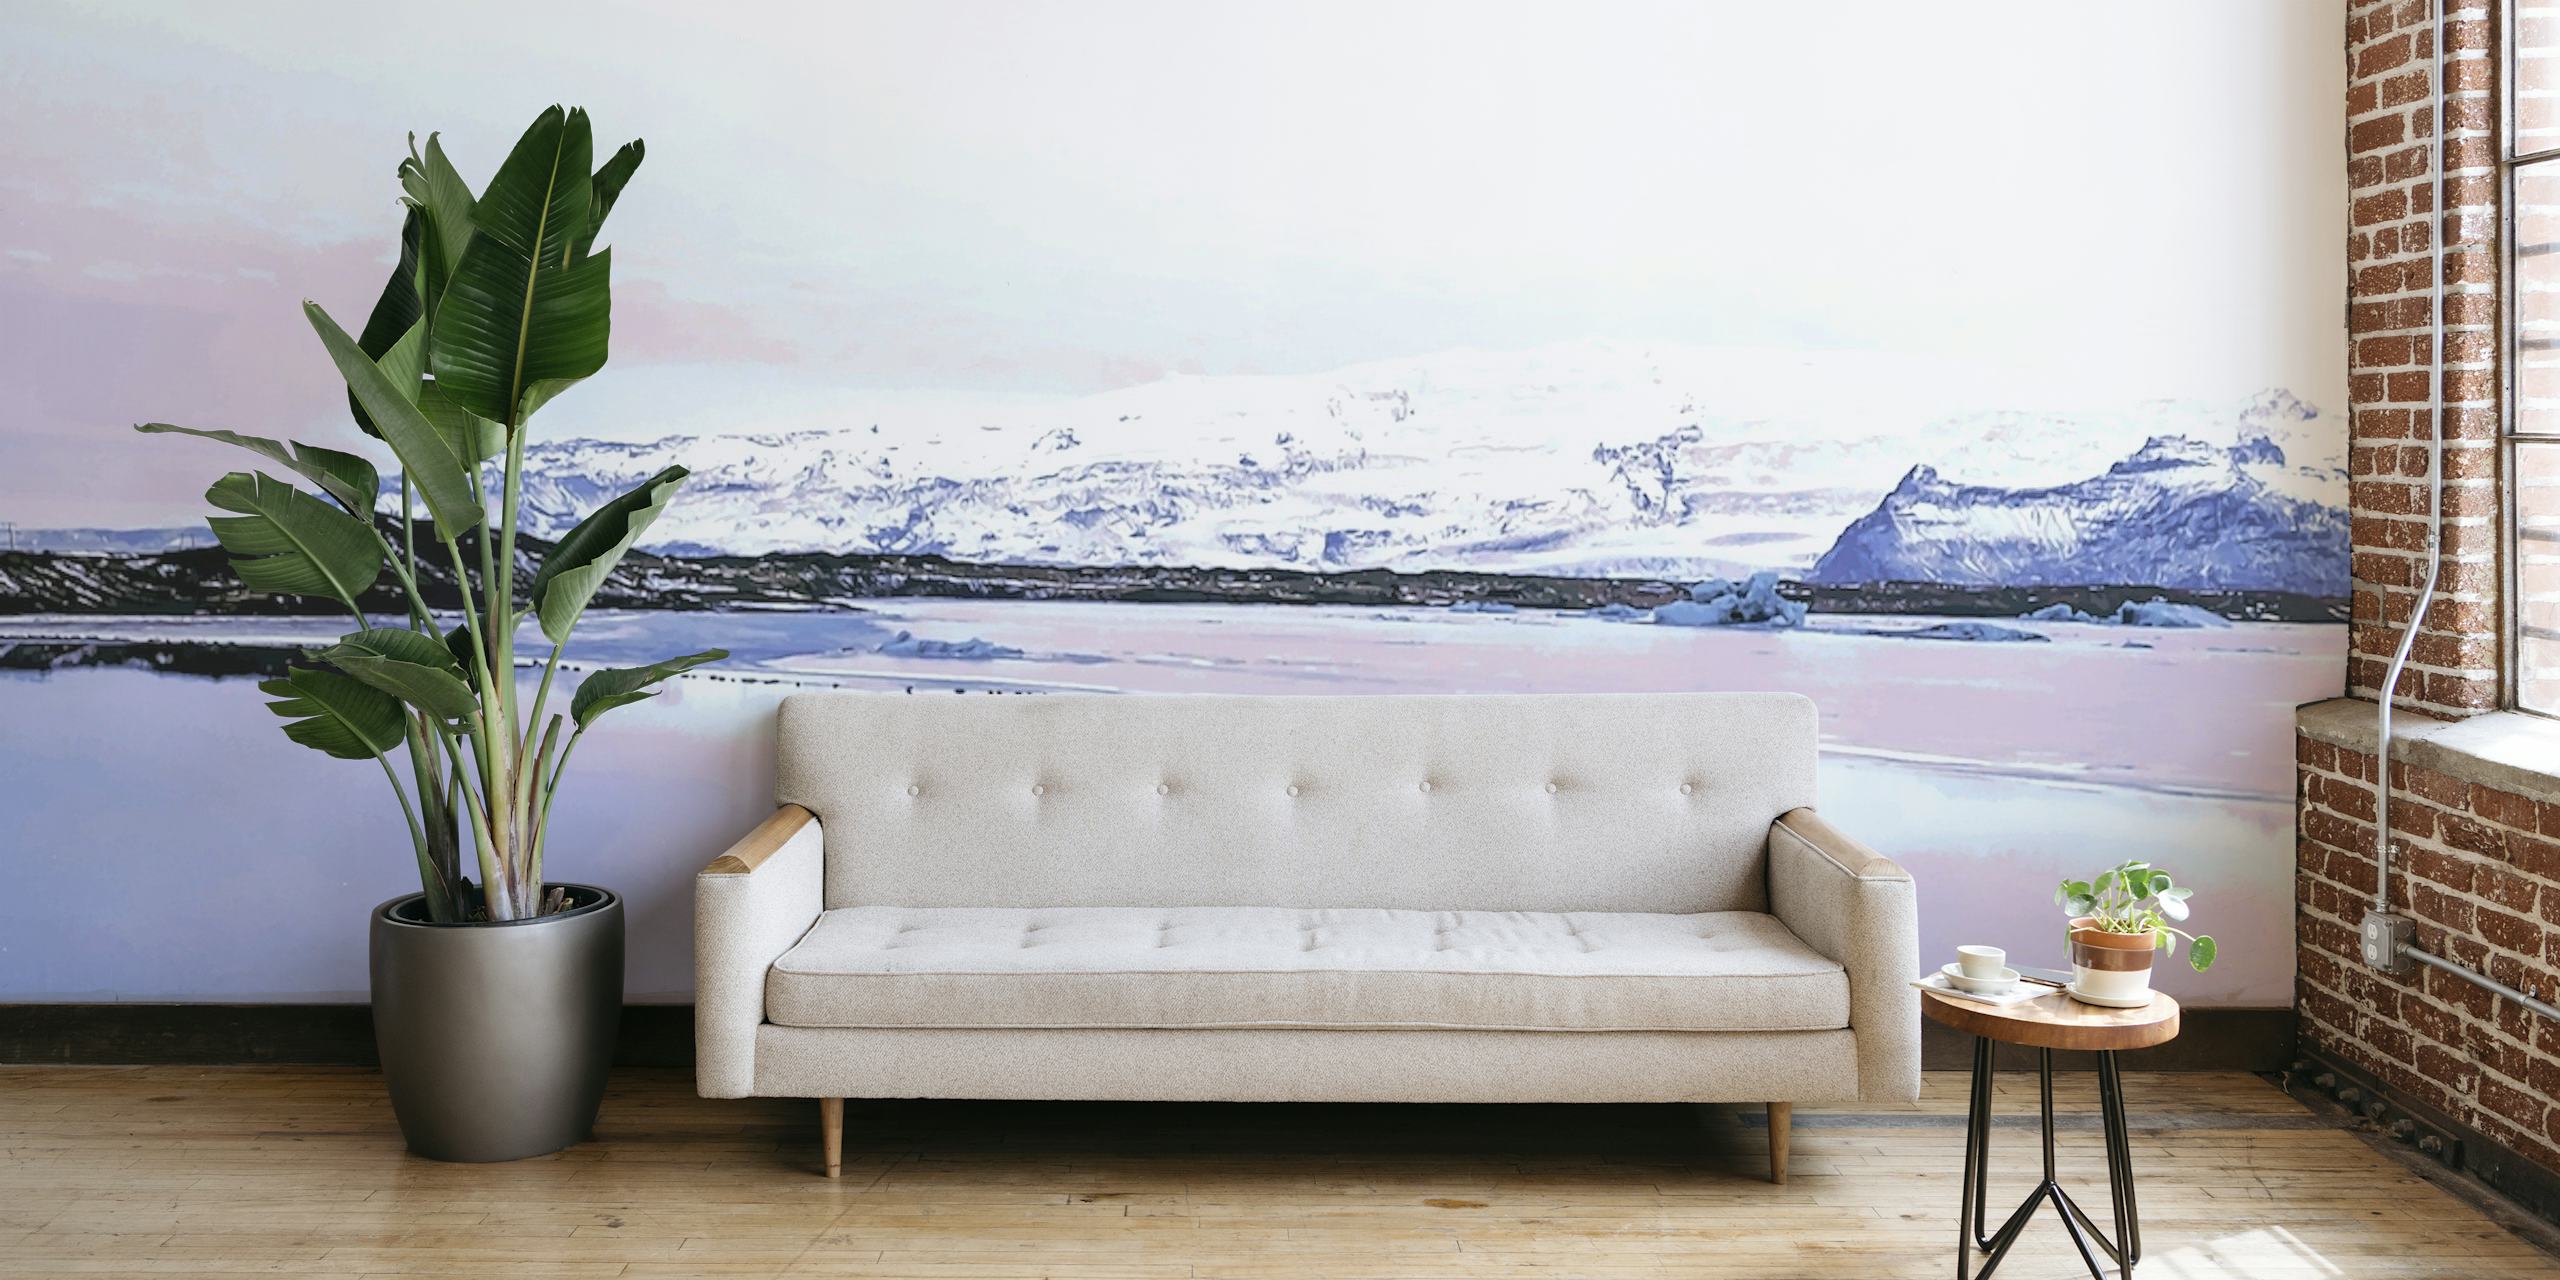 IJslandse landschapsmuurschildering met besneeuwde bergen en waterreflecties